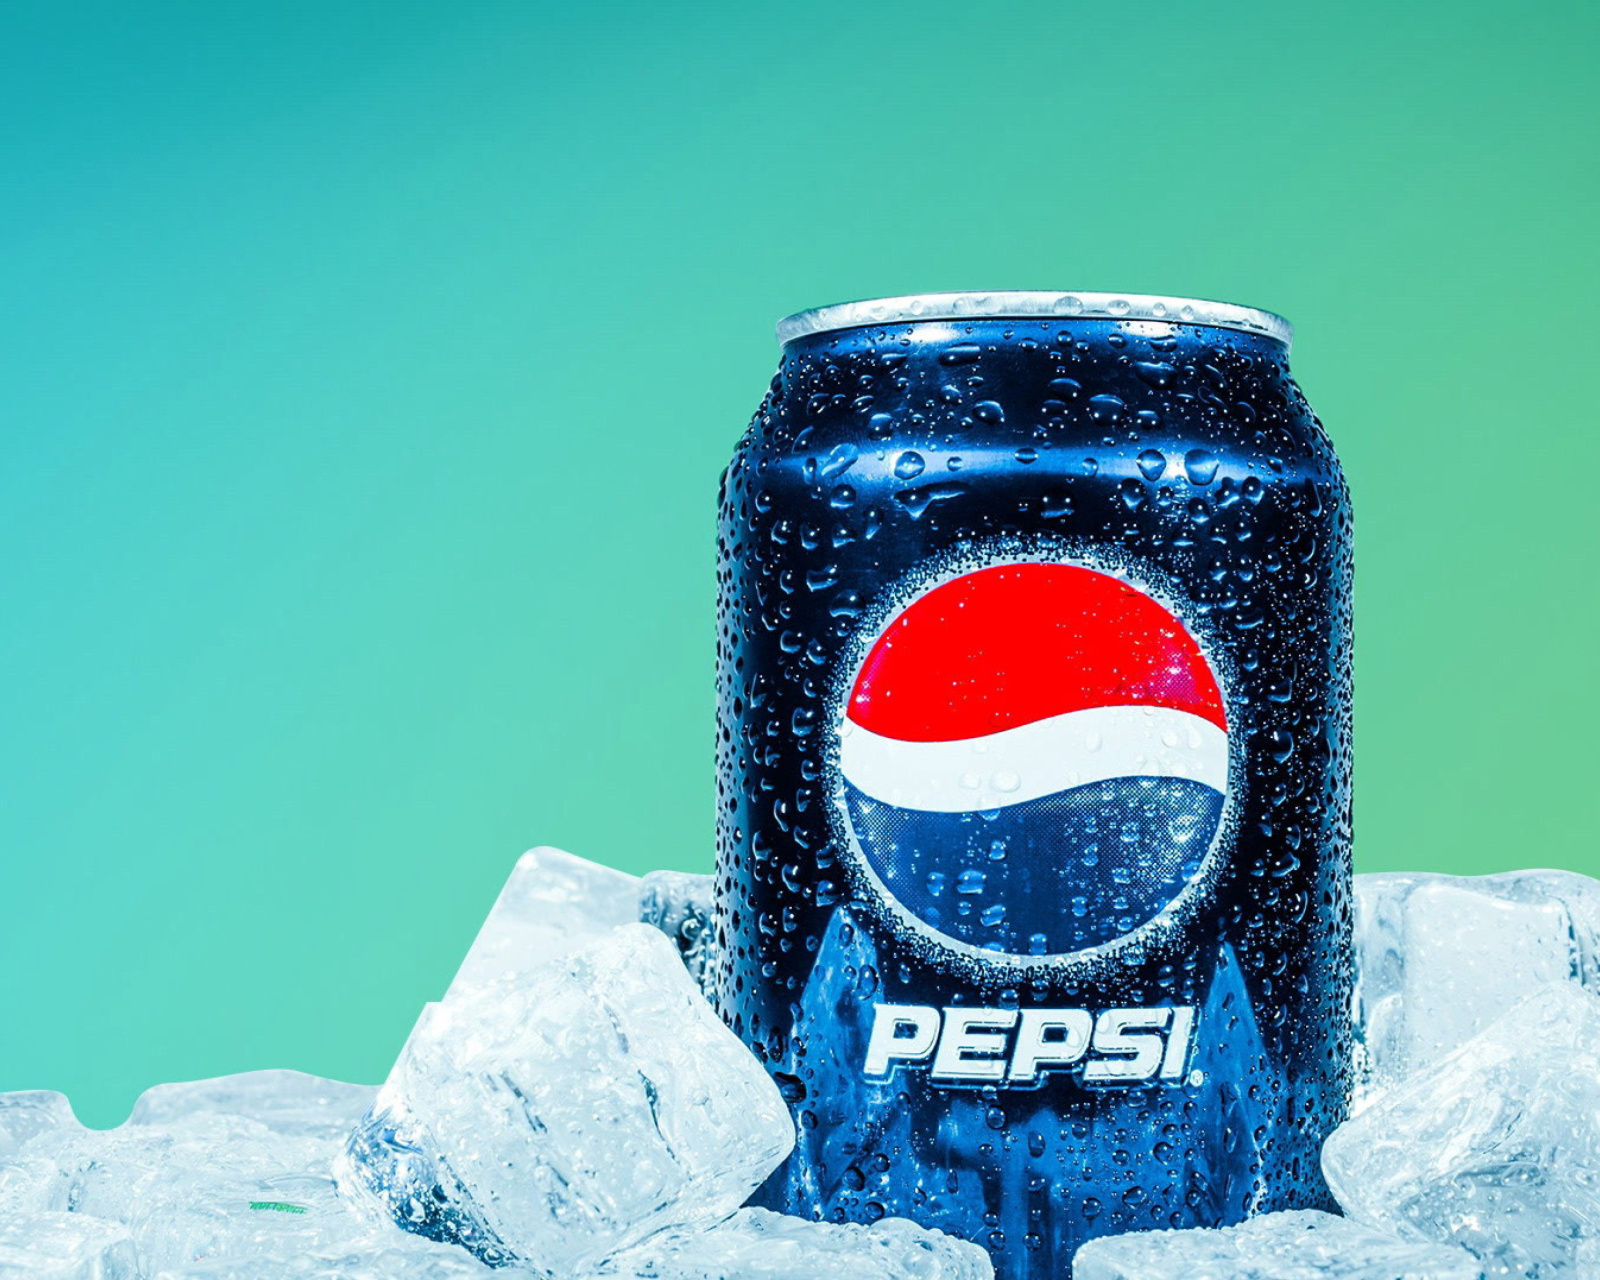 Sfondi Pepsi in Ice 1600x1280